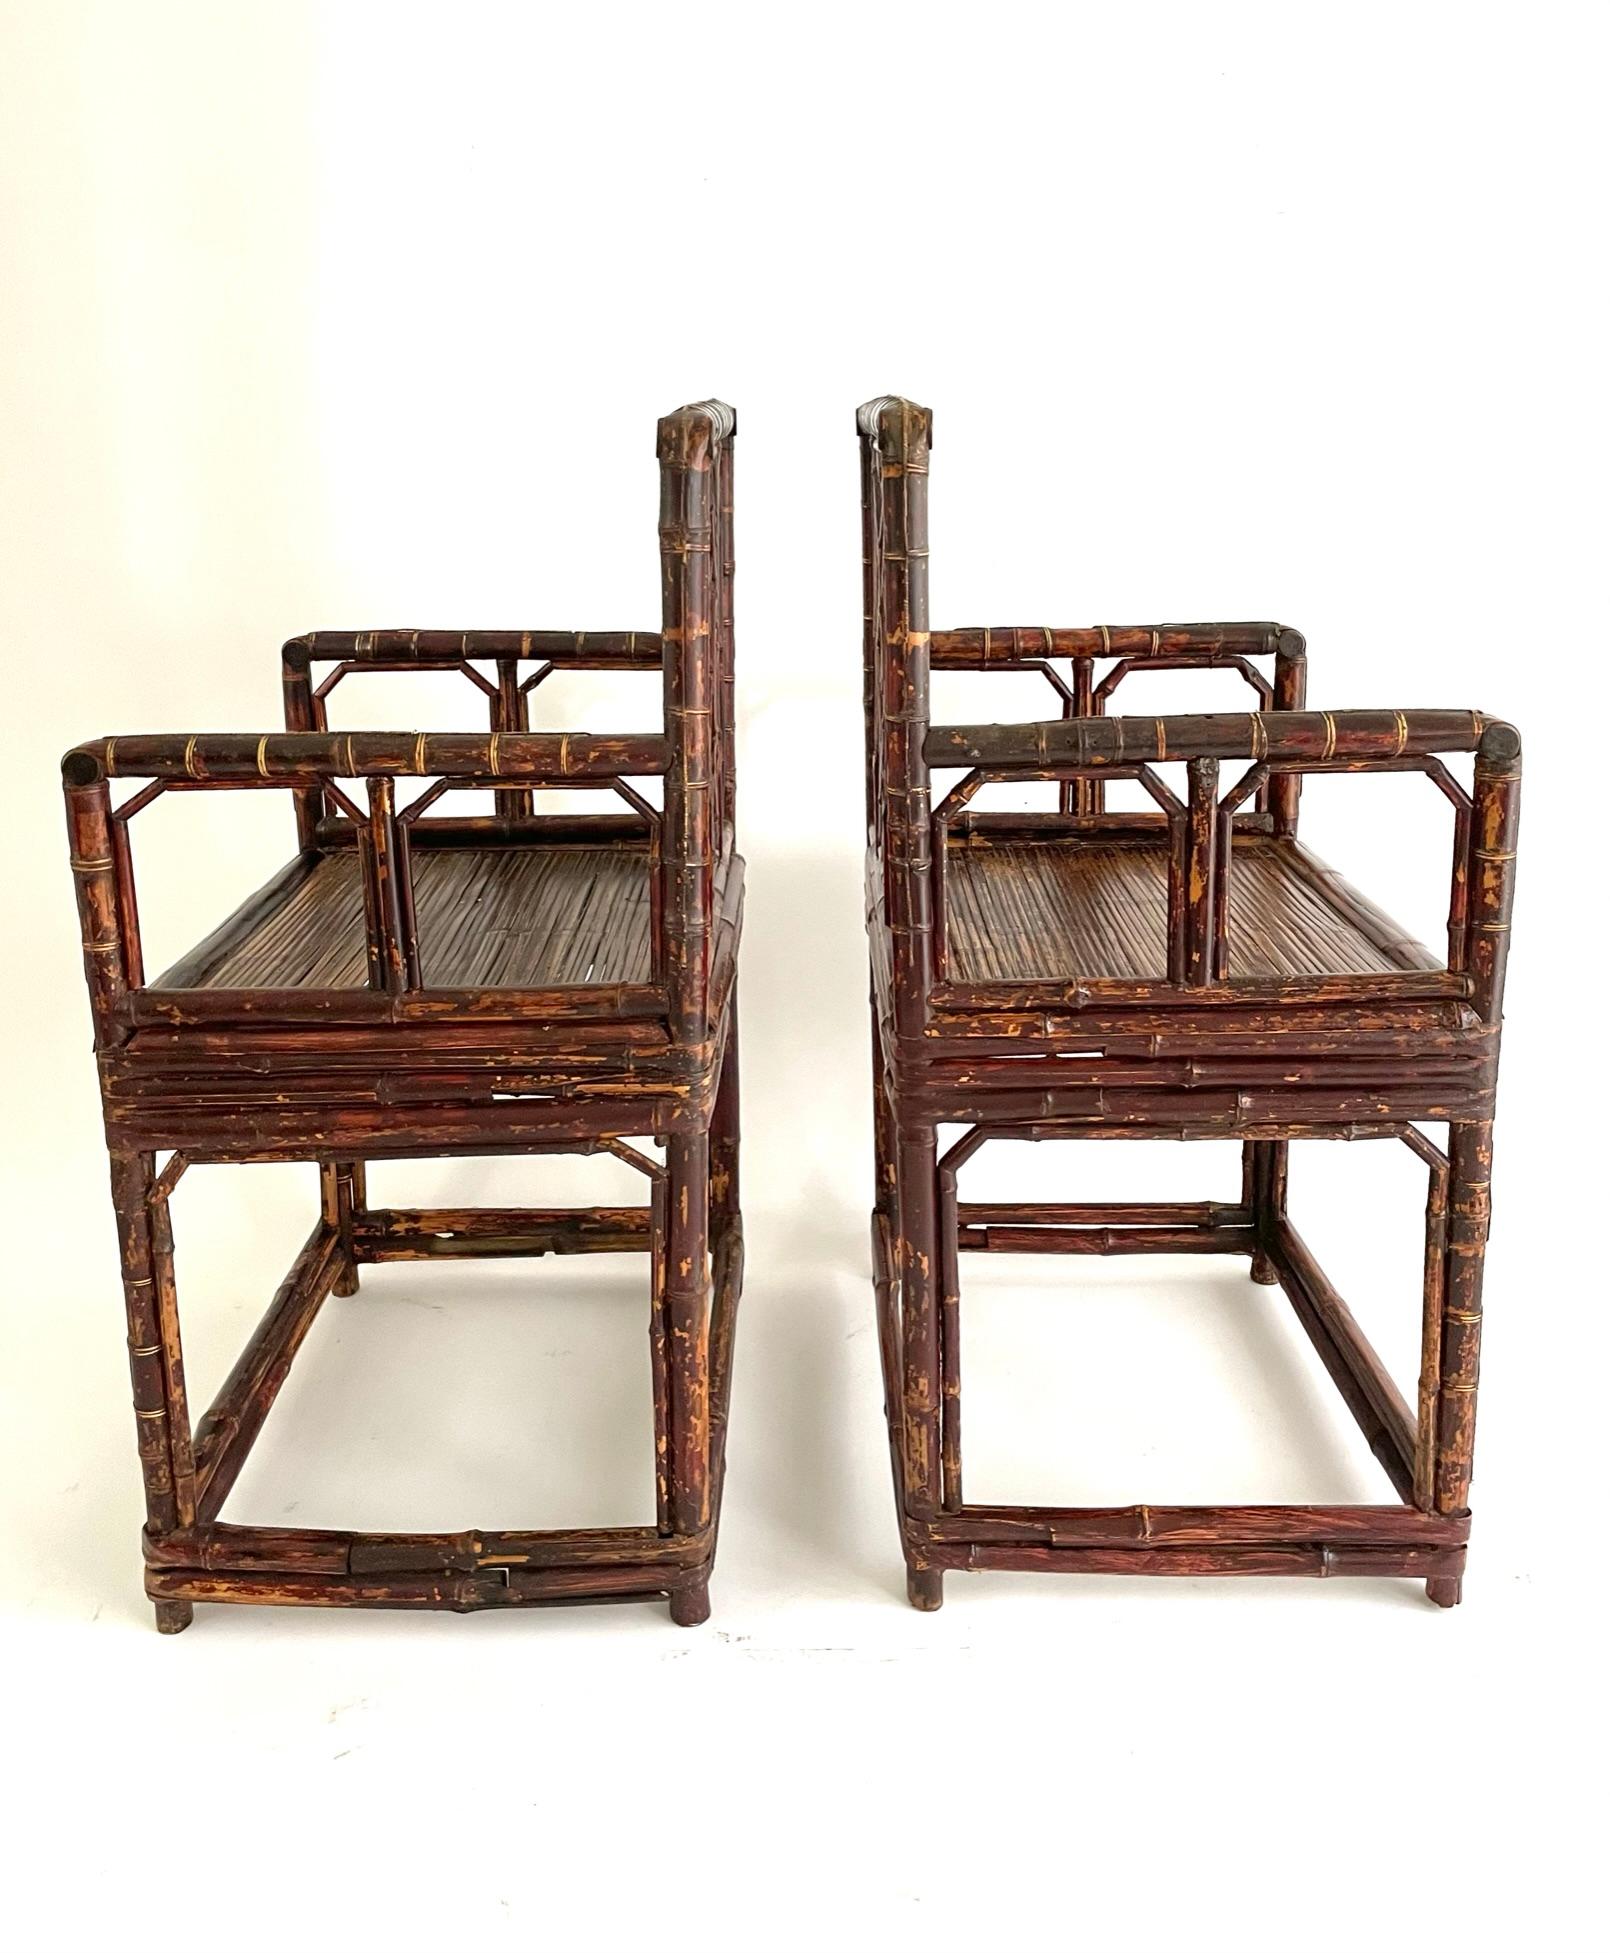 Ein Paar feine Bambussessel mit Gittermuster, circa 1880. 
Alte Bambusmöbel sind viel seltener als Holzmöbel, da nur wenige erhalten geblieben sind. Die Tischlerei von Bambusmöbeln kann sehr verlockend sein, weil sie teilweise die Tischlerei von